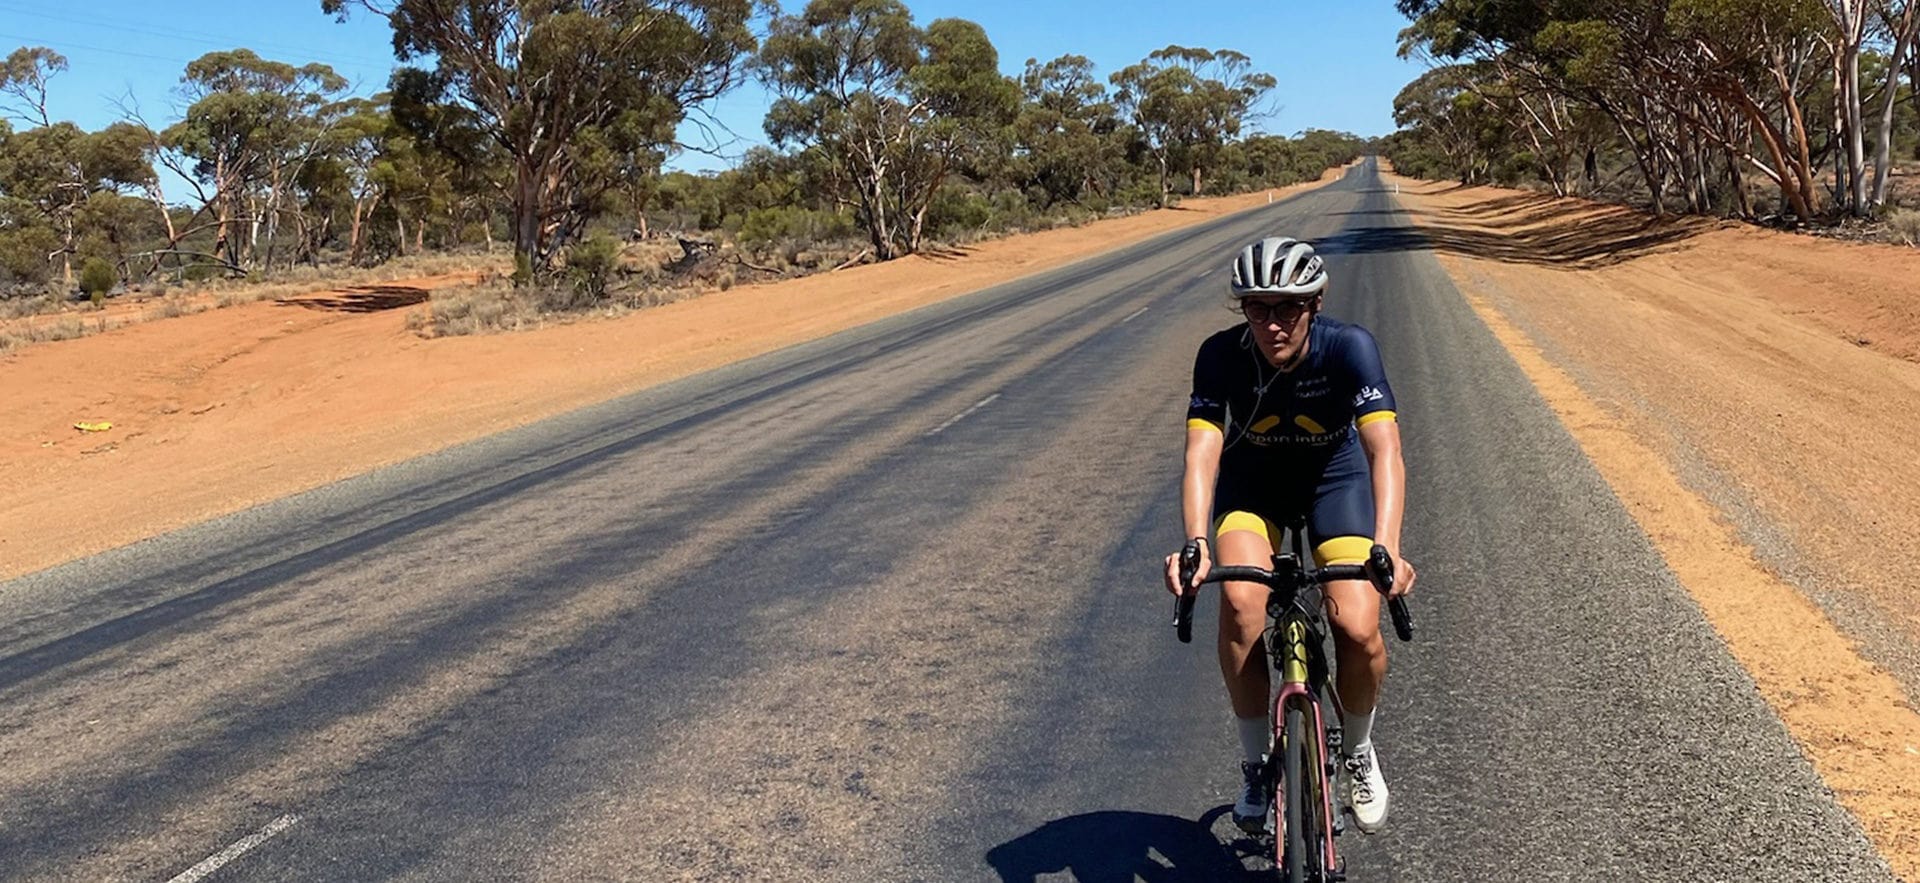 La lunga strada di Caroline Soubayroux e David Ferguson in Australia. Da Perth a Brisbane.